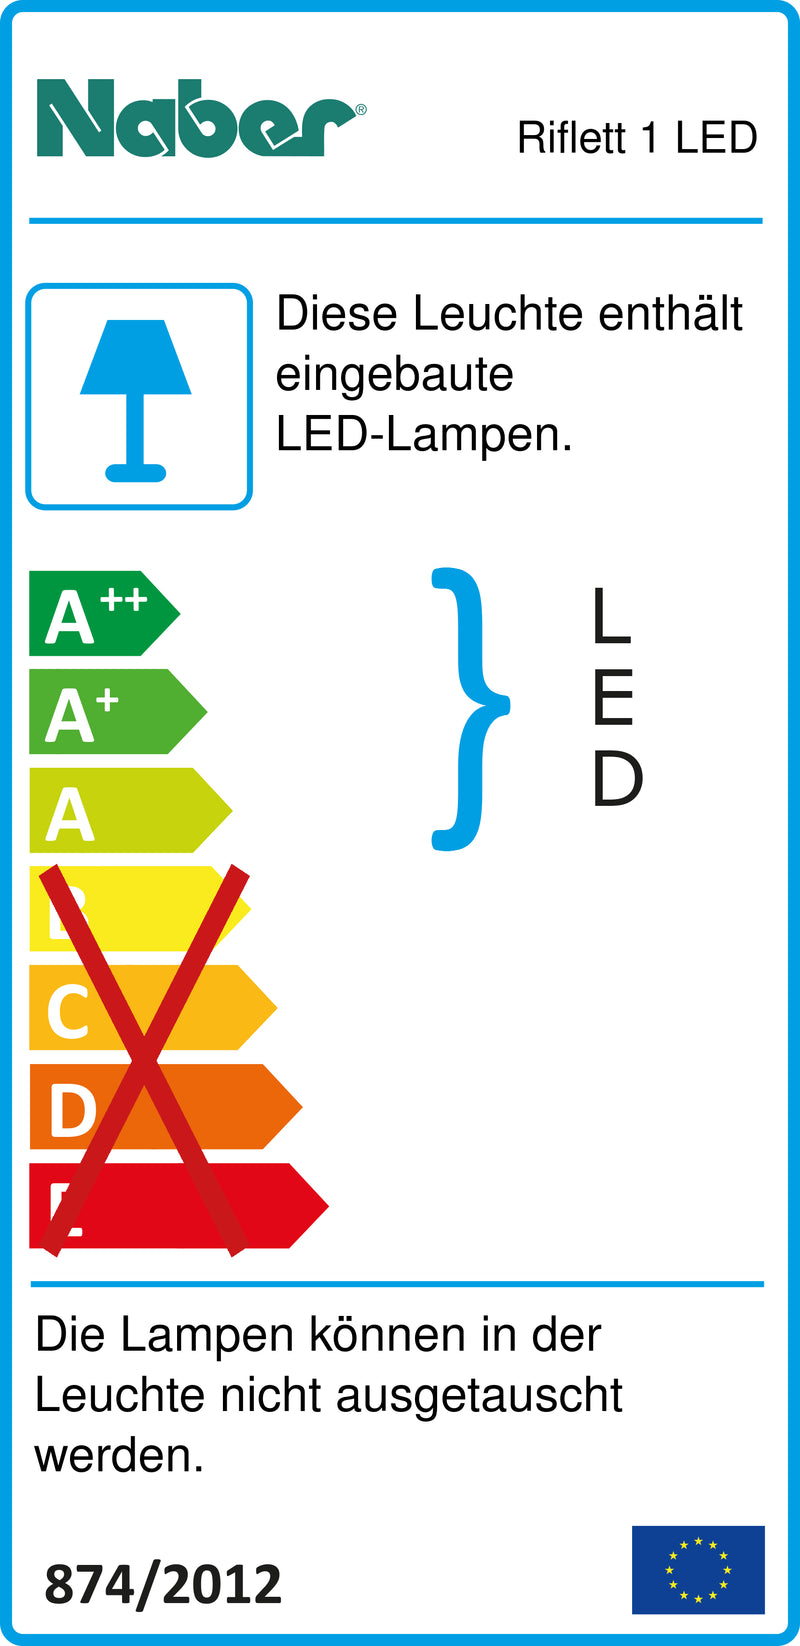 E-Label zu Zeichnung zu Riflett 1 LED als Variante Set-2, 4000 K neutralweiß von Naber GmbH in der Kategorie Lichttechnik in Österreich auf conceptshop.at